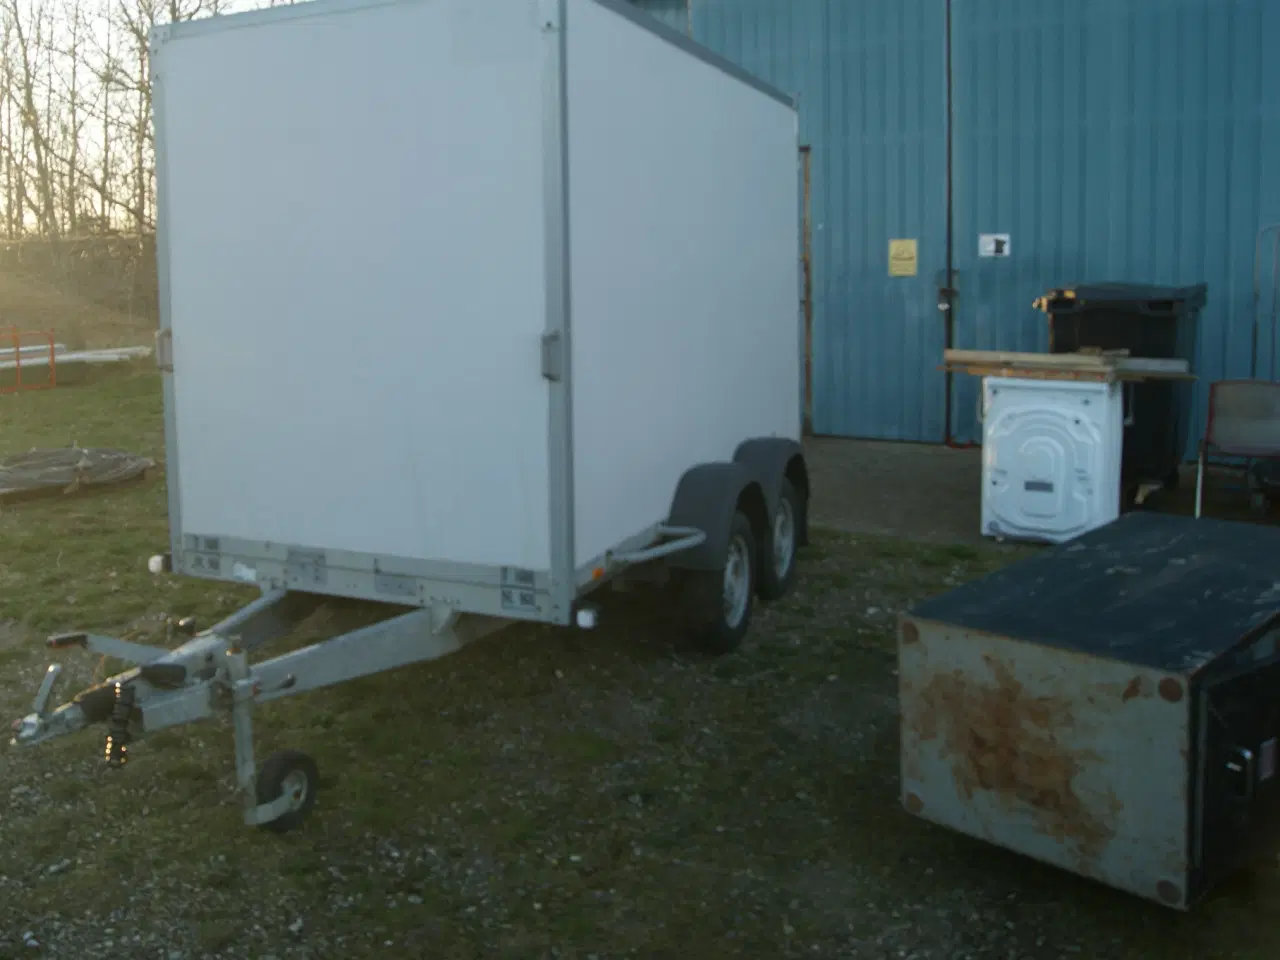 Billede 2 - Udlejning af diverse trailere. i 6270 Tønder.